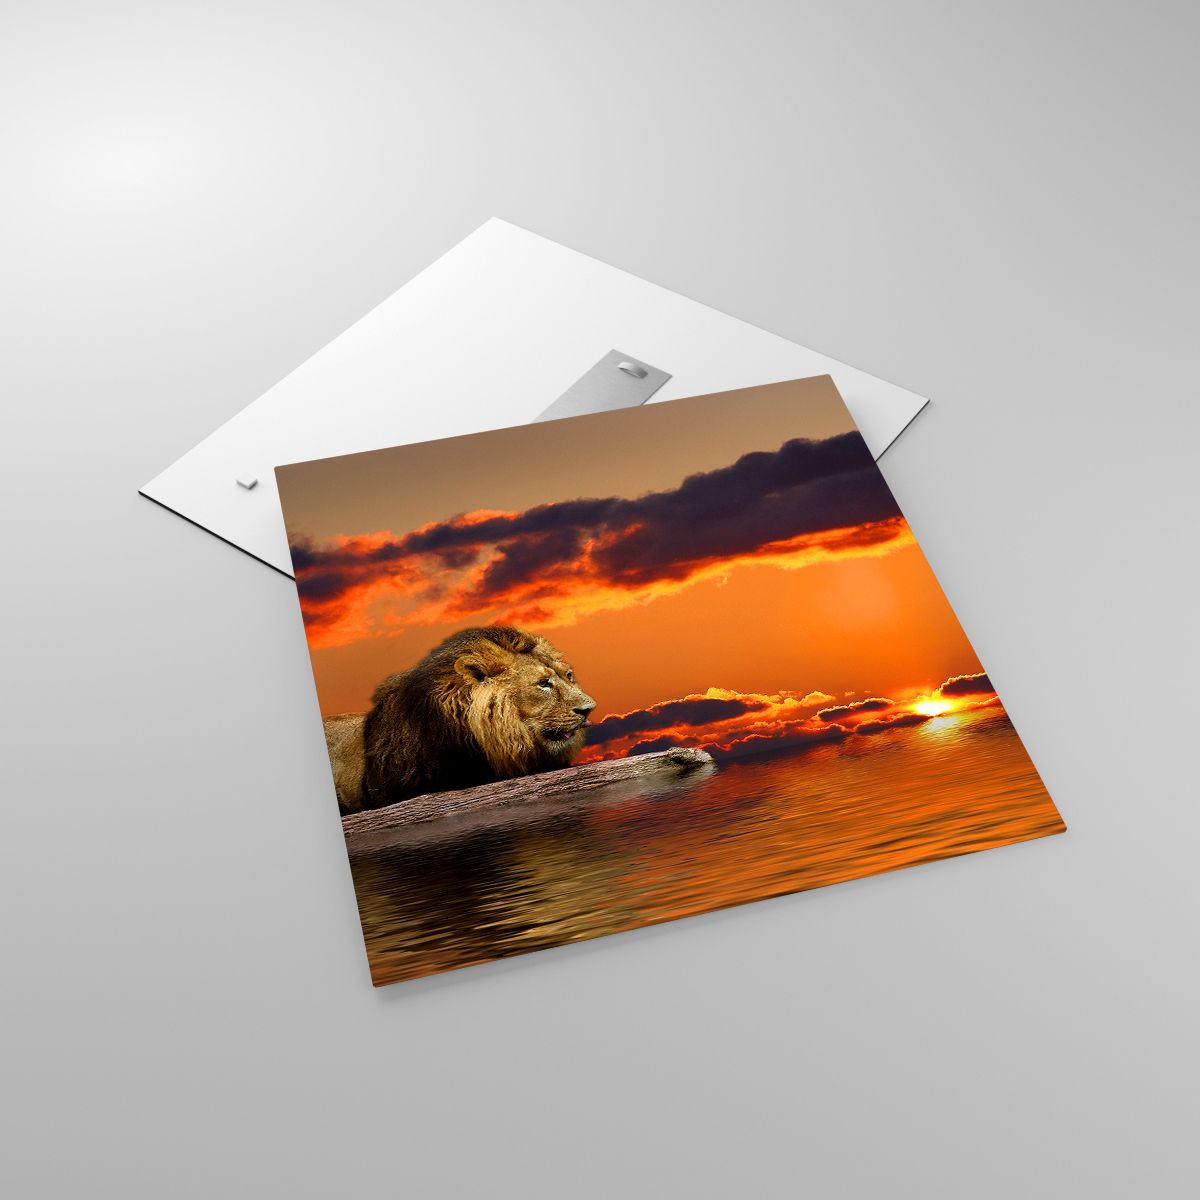 Glasbild Löwe, Glasbild Der Sonnenuntergang, Glasbild Tiere, Glasbild Landschaft, Glasbild Afrika